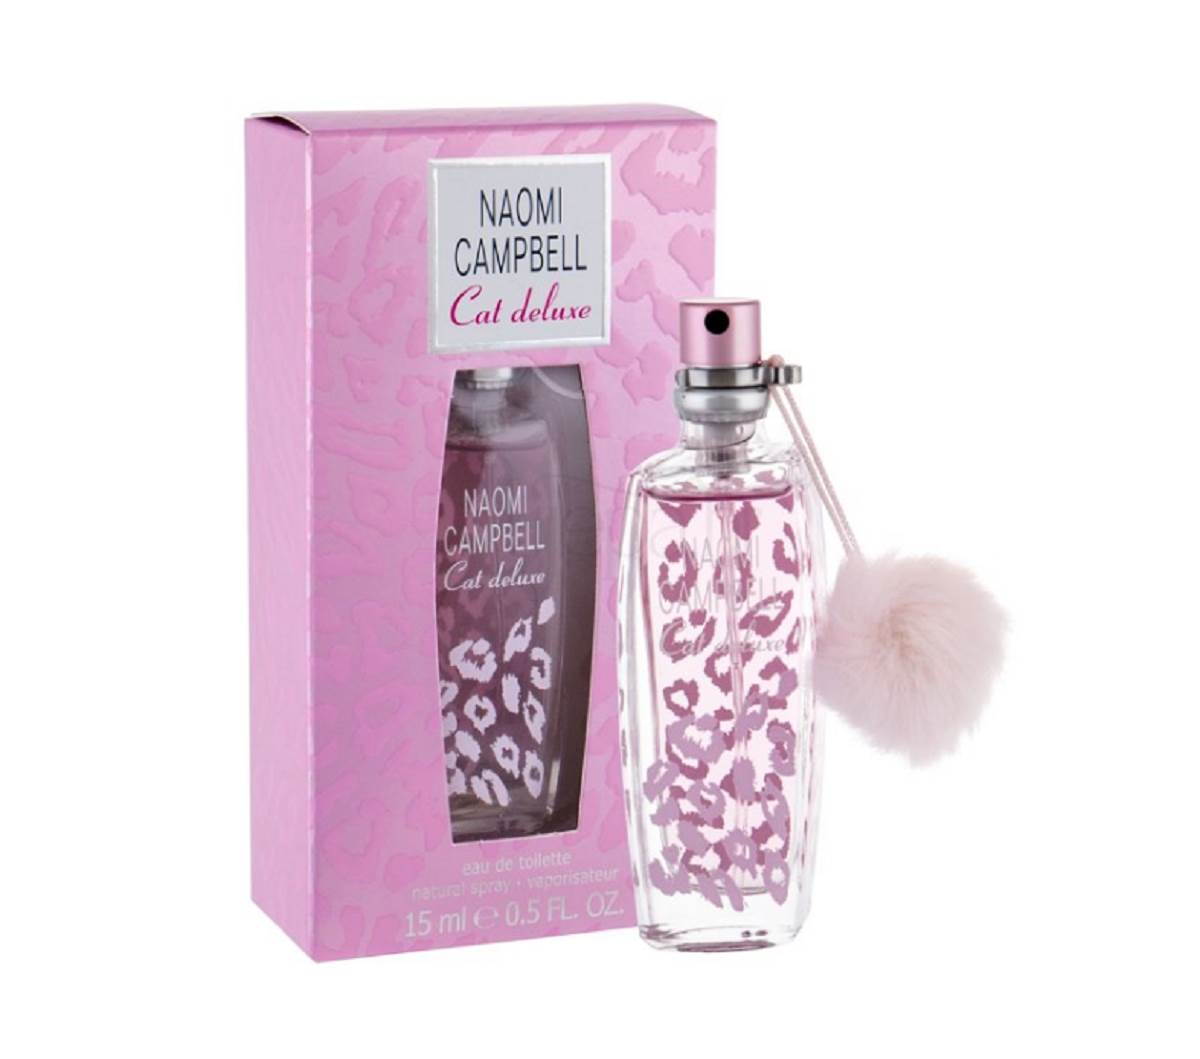  Naomi Campbell Cat Deluxe je neodoljivi parfem za proleće. 